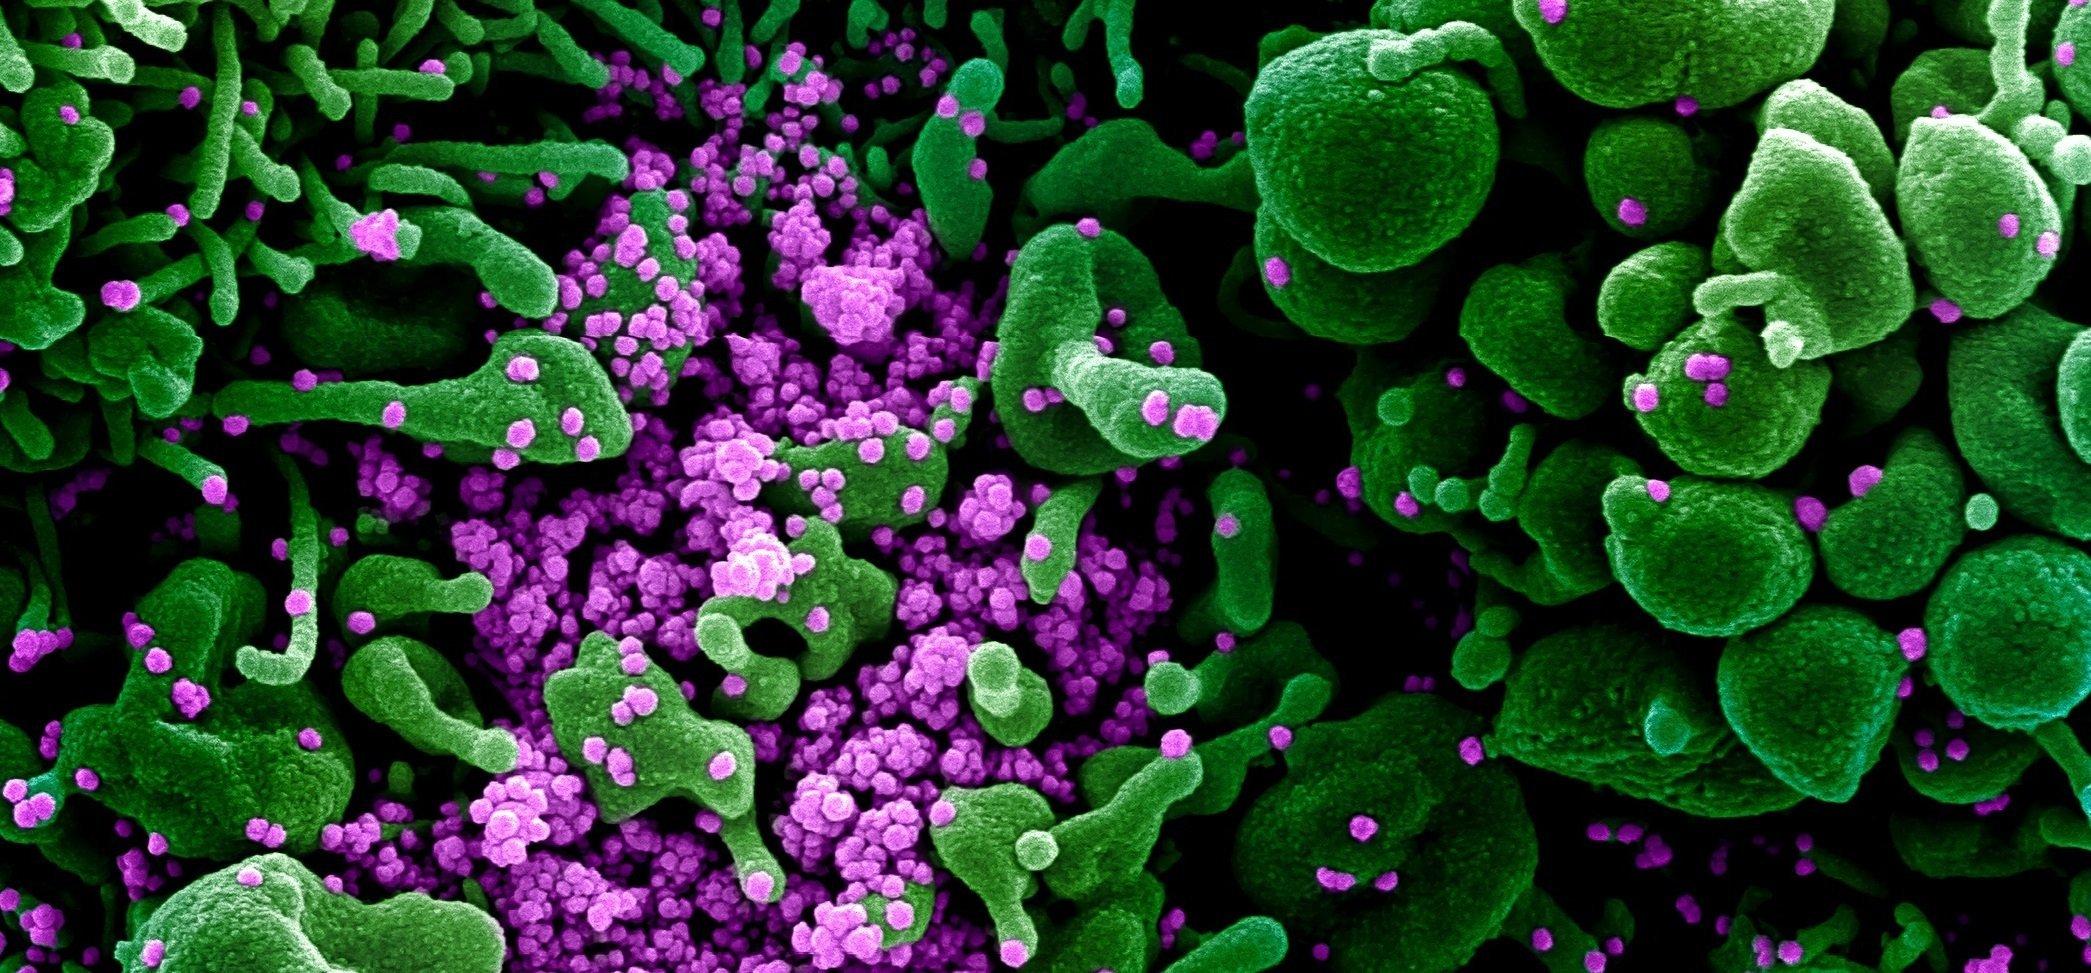 Ein Gewebe mit grün eingefärbten Körperzellen. Darauf sitzen teils eine große Zahl kleiner pinkfarbener Kügelchen. Dabei handelt es sich um das neue Coronavirus. Das Bild wurde nachträglich eingefärbt.